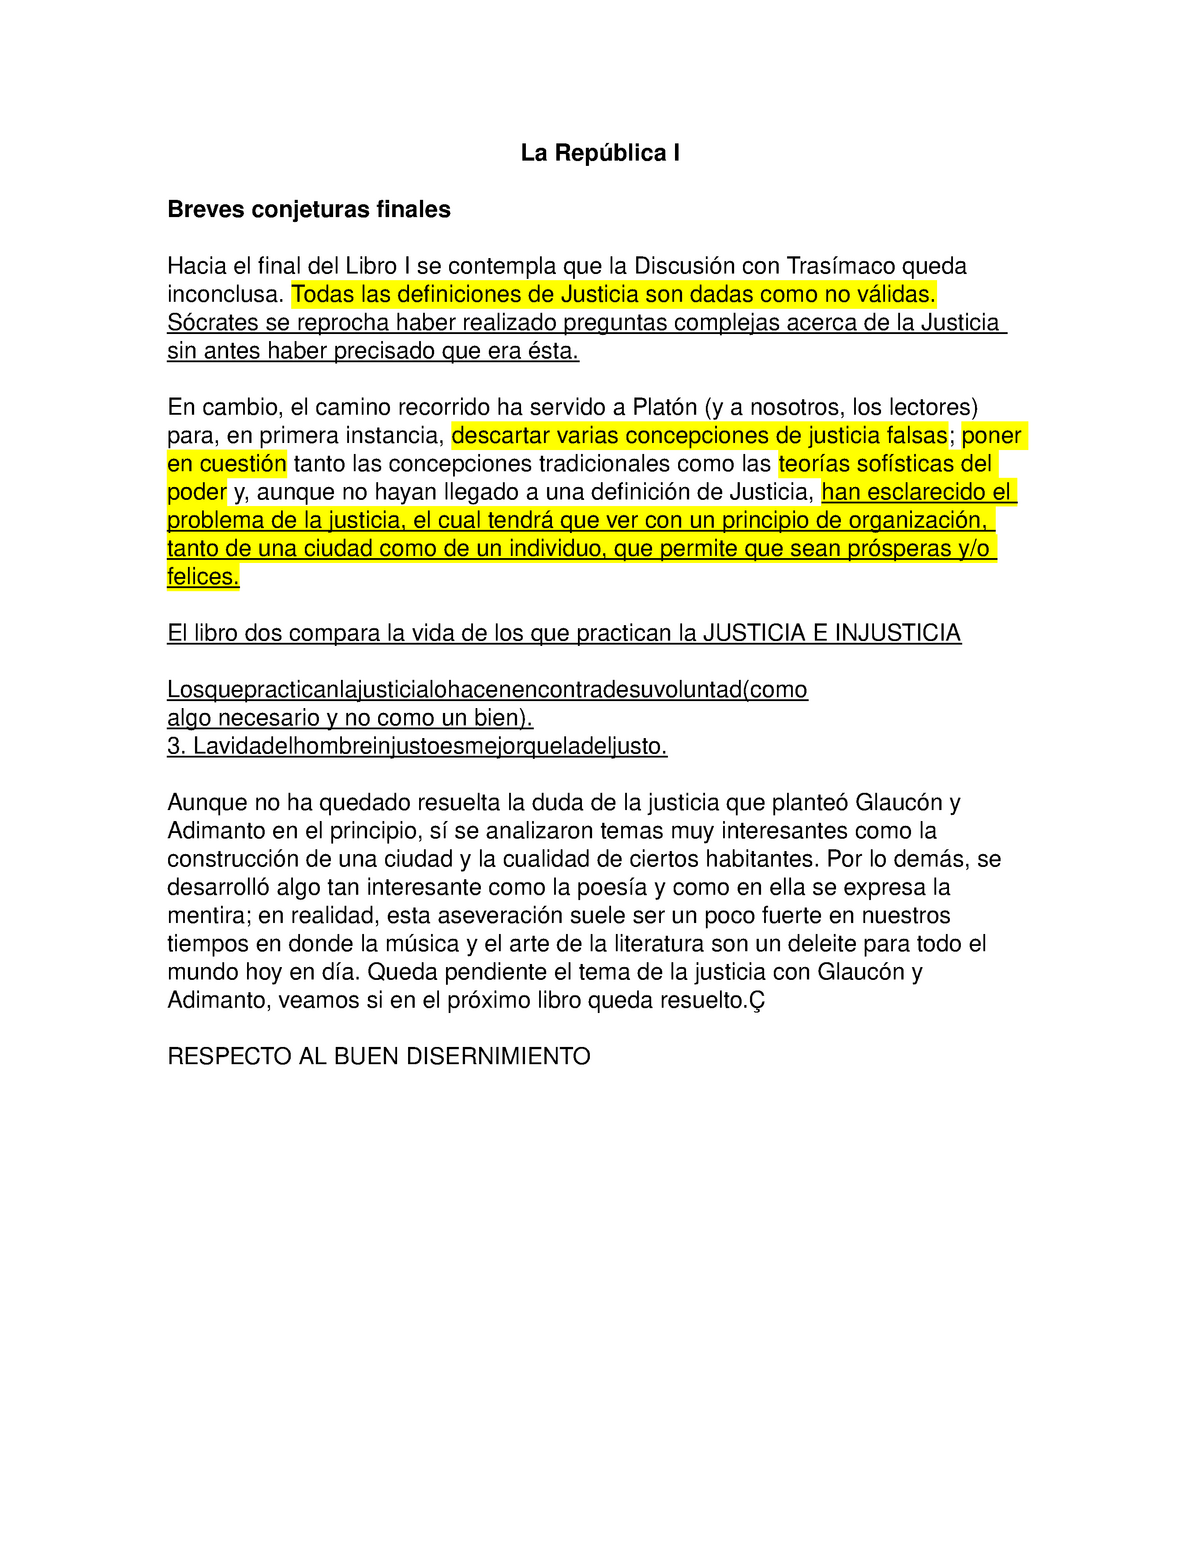 La Republica I Lecture Notes 4 5 3 1 Studocu